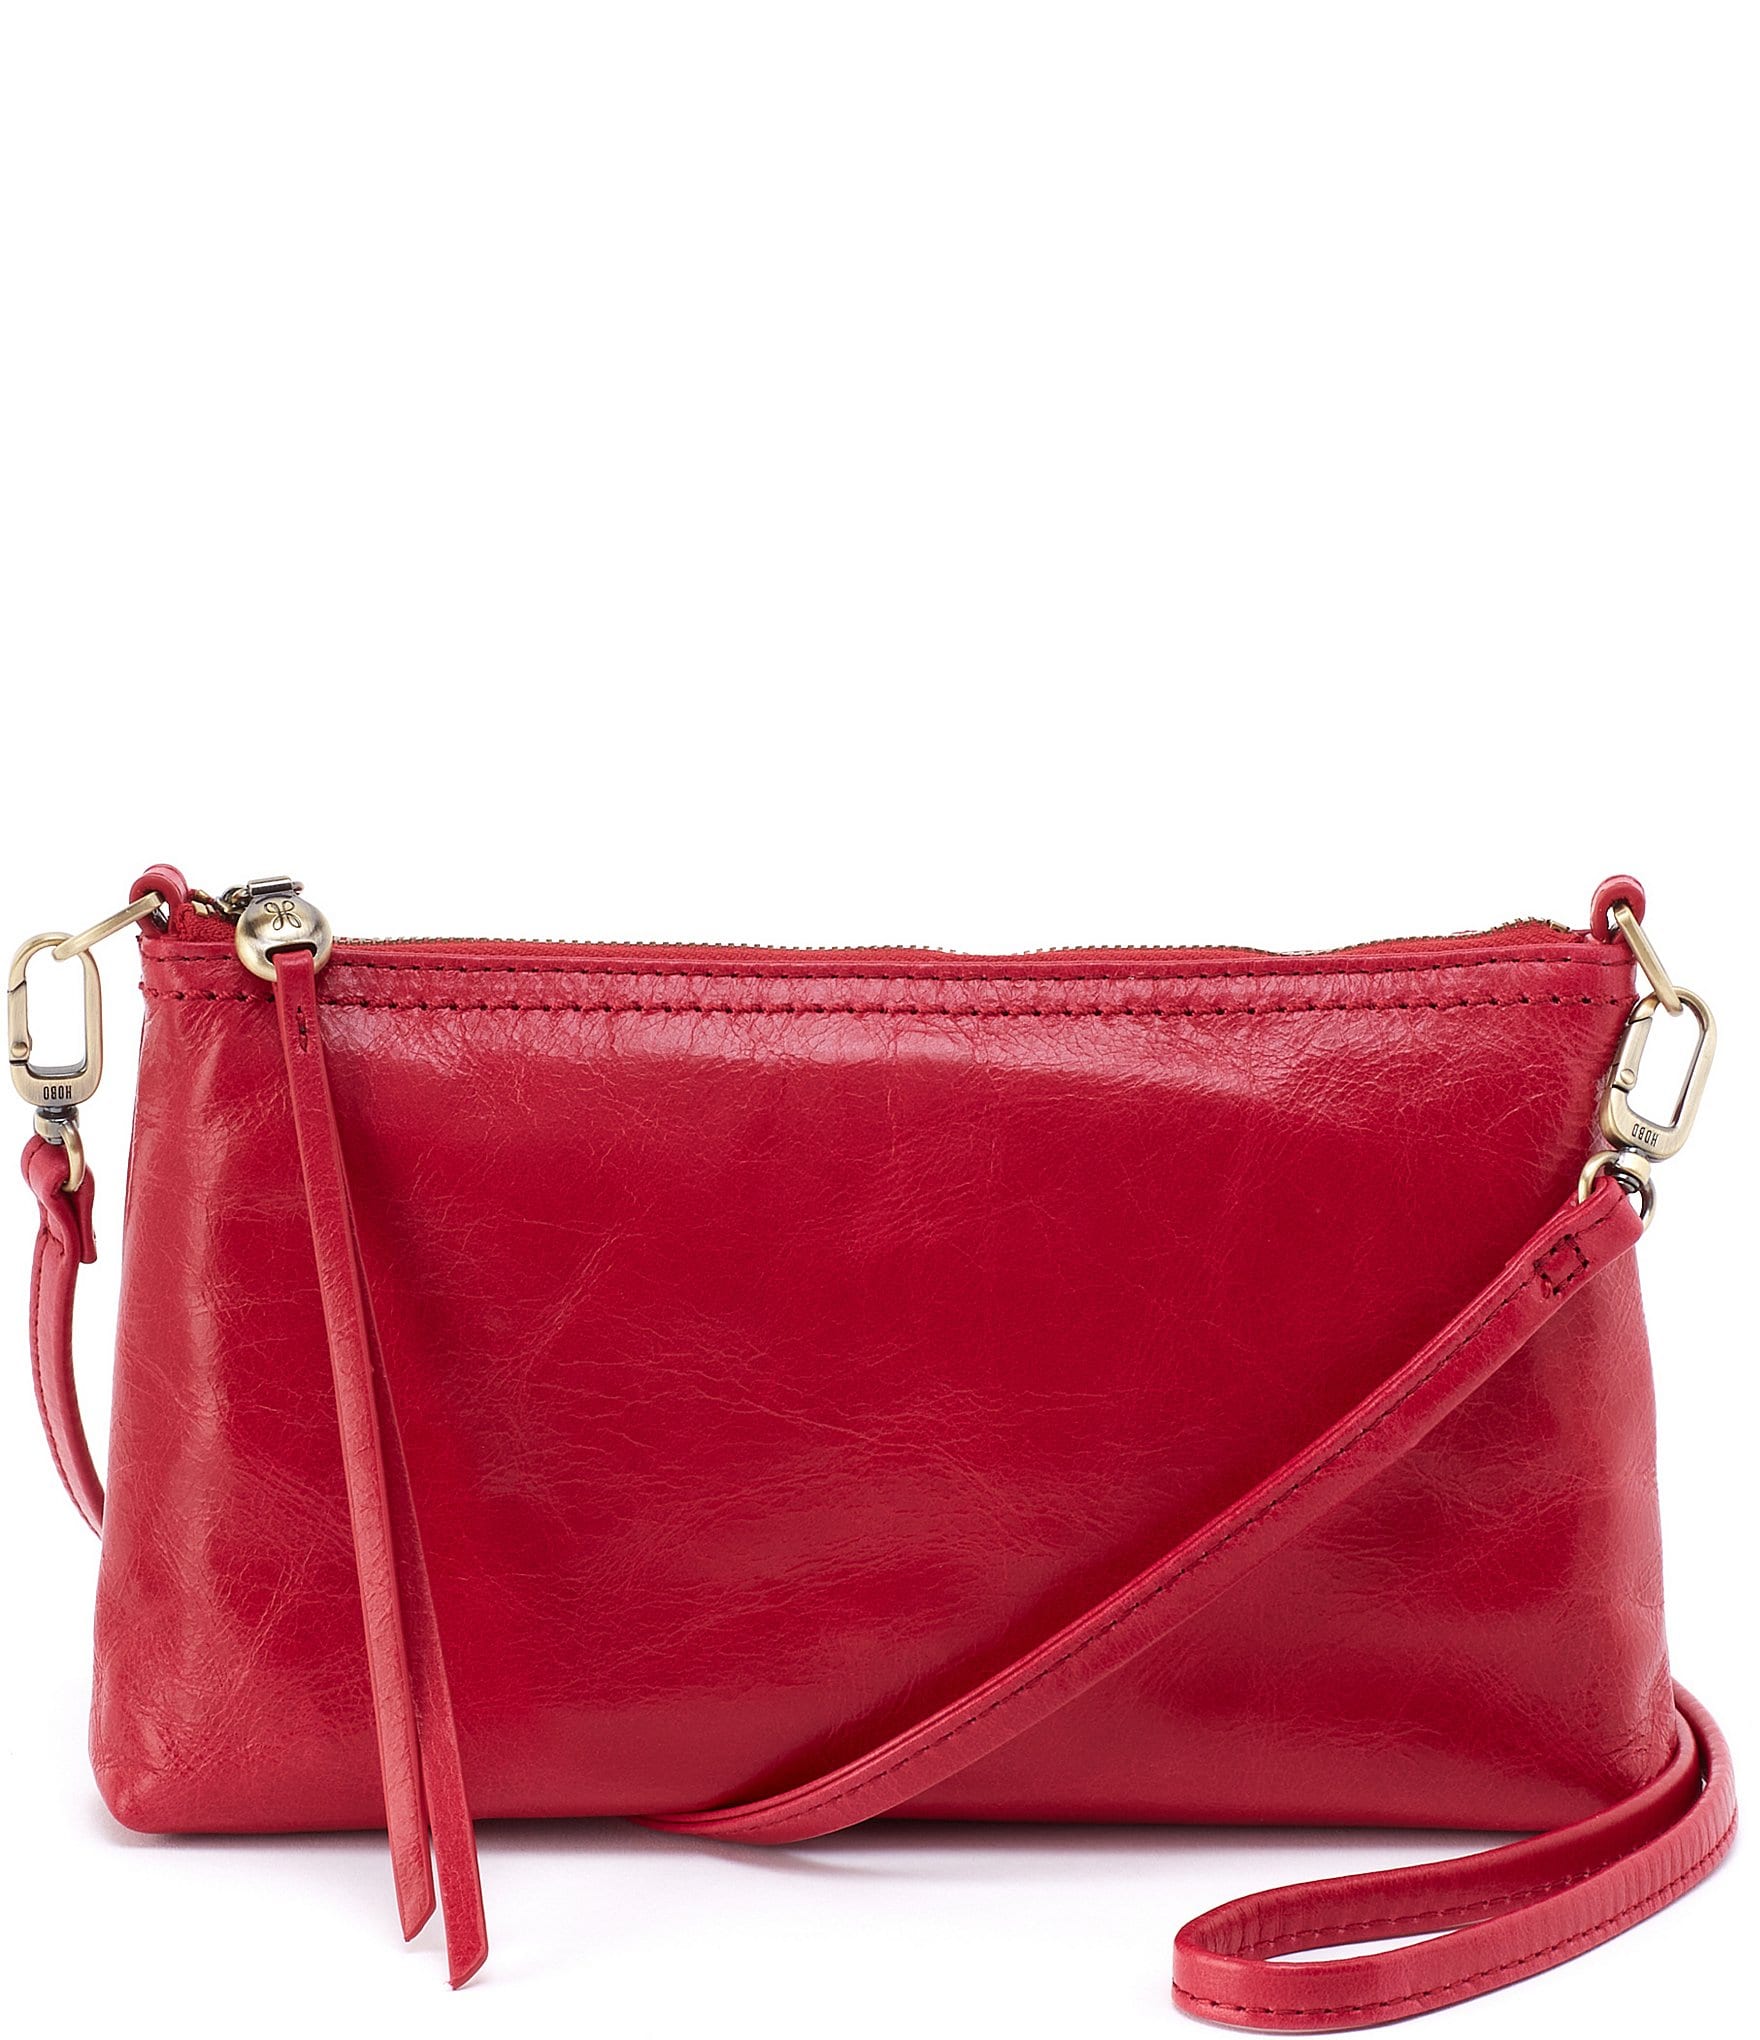 Buy DAVIDJONES Women Medium Faux Leather Hobo Tote Bag Crossbody Shoulder  Bag at Amazon.in